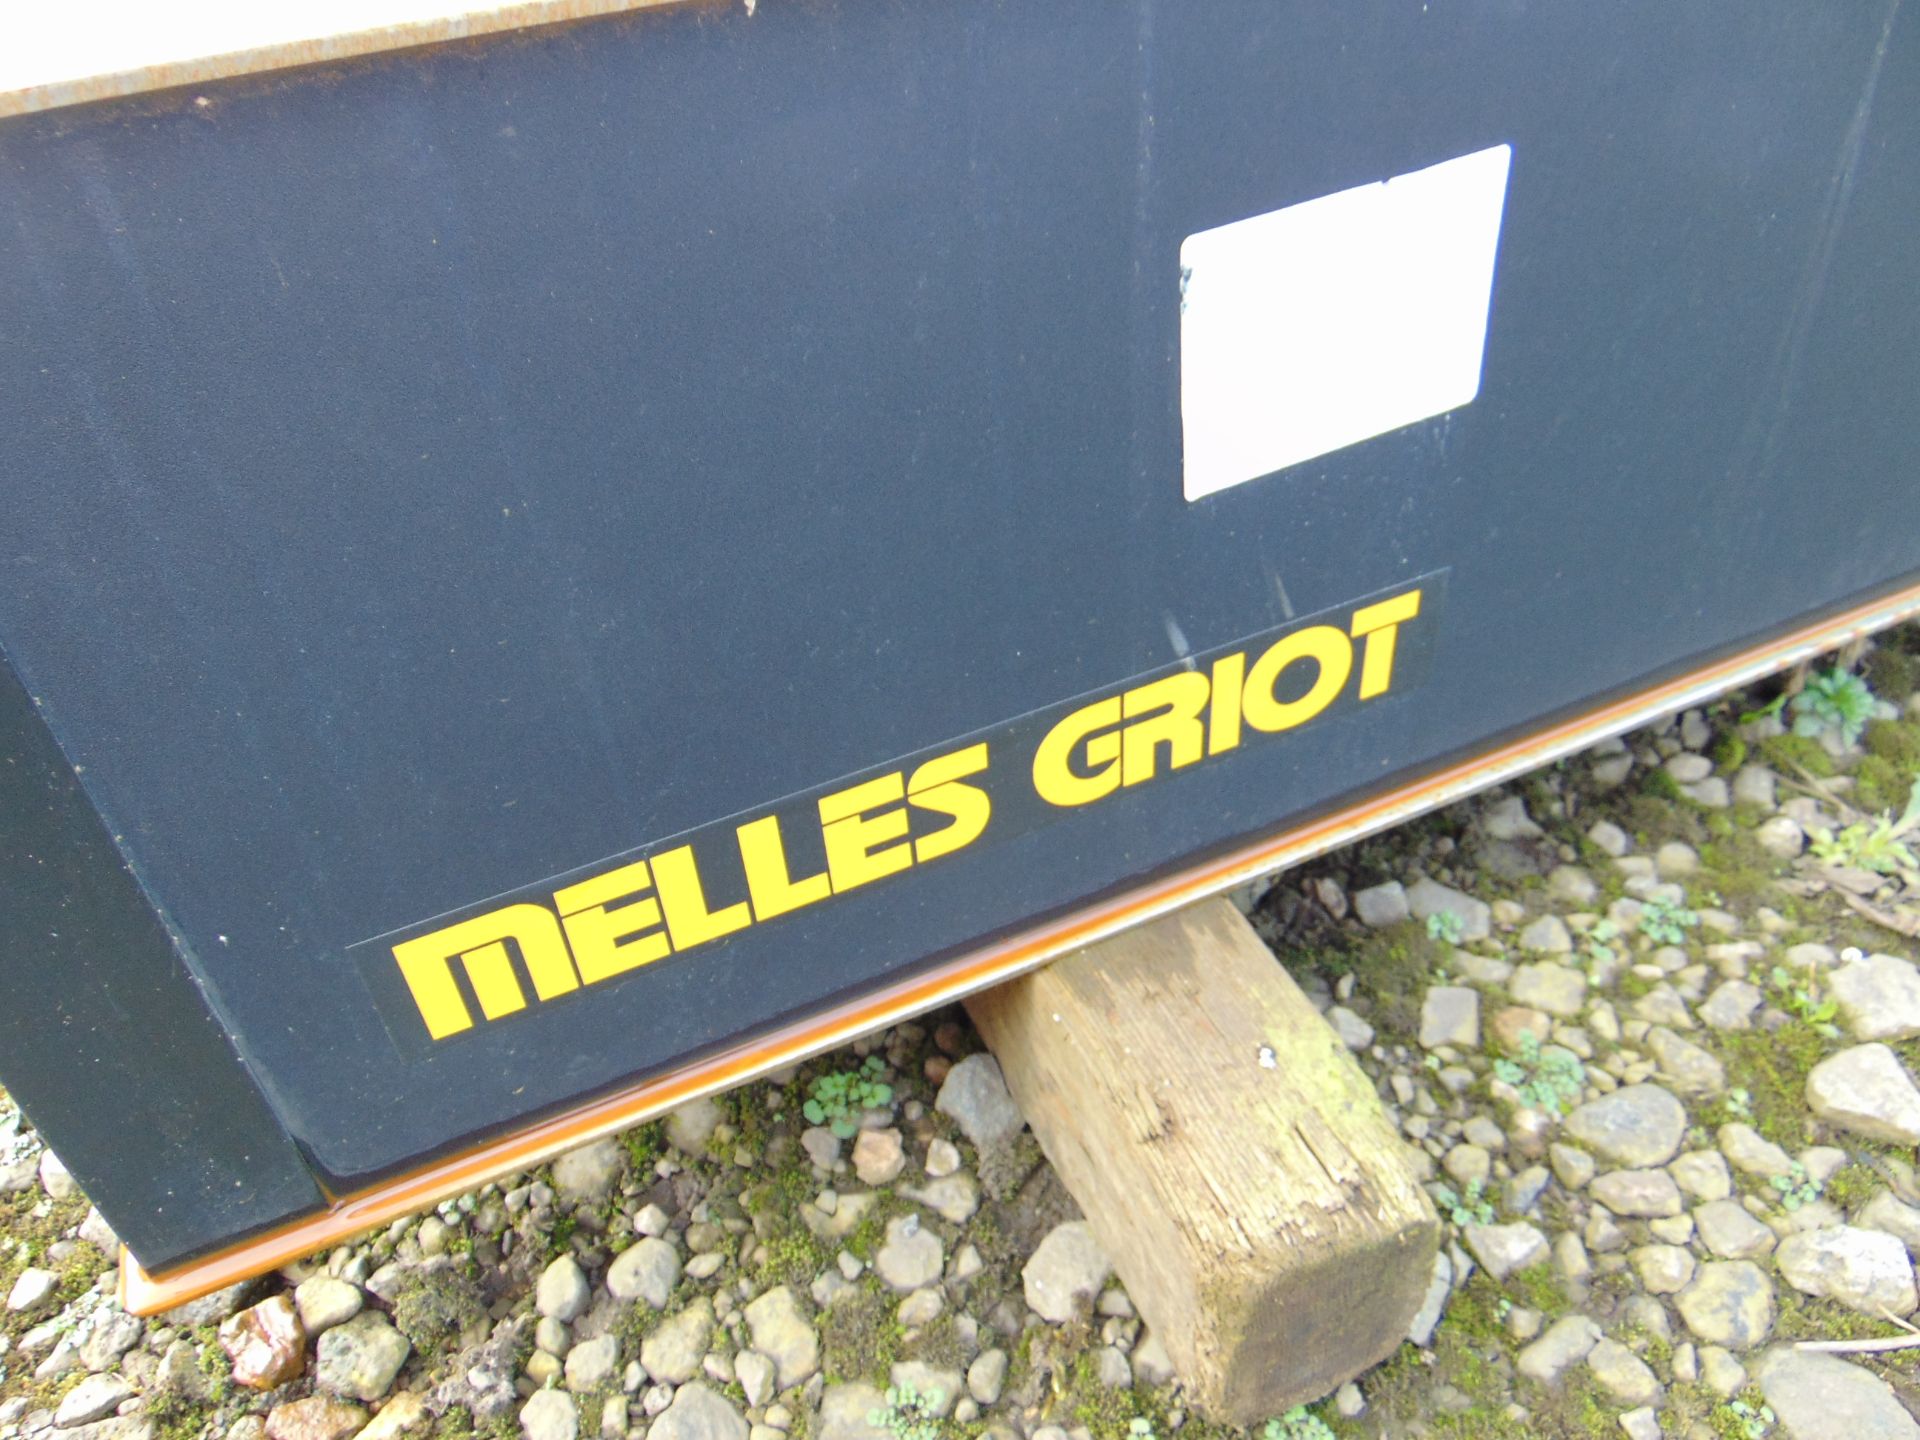 Melles Griot Optical Table L 4.25m x W 1.5m c/w Legs - Image 6 of 6